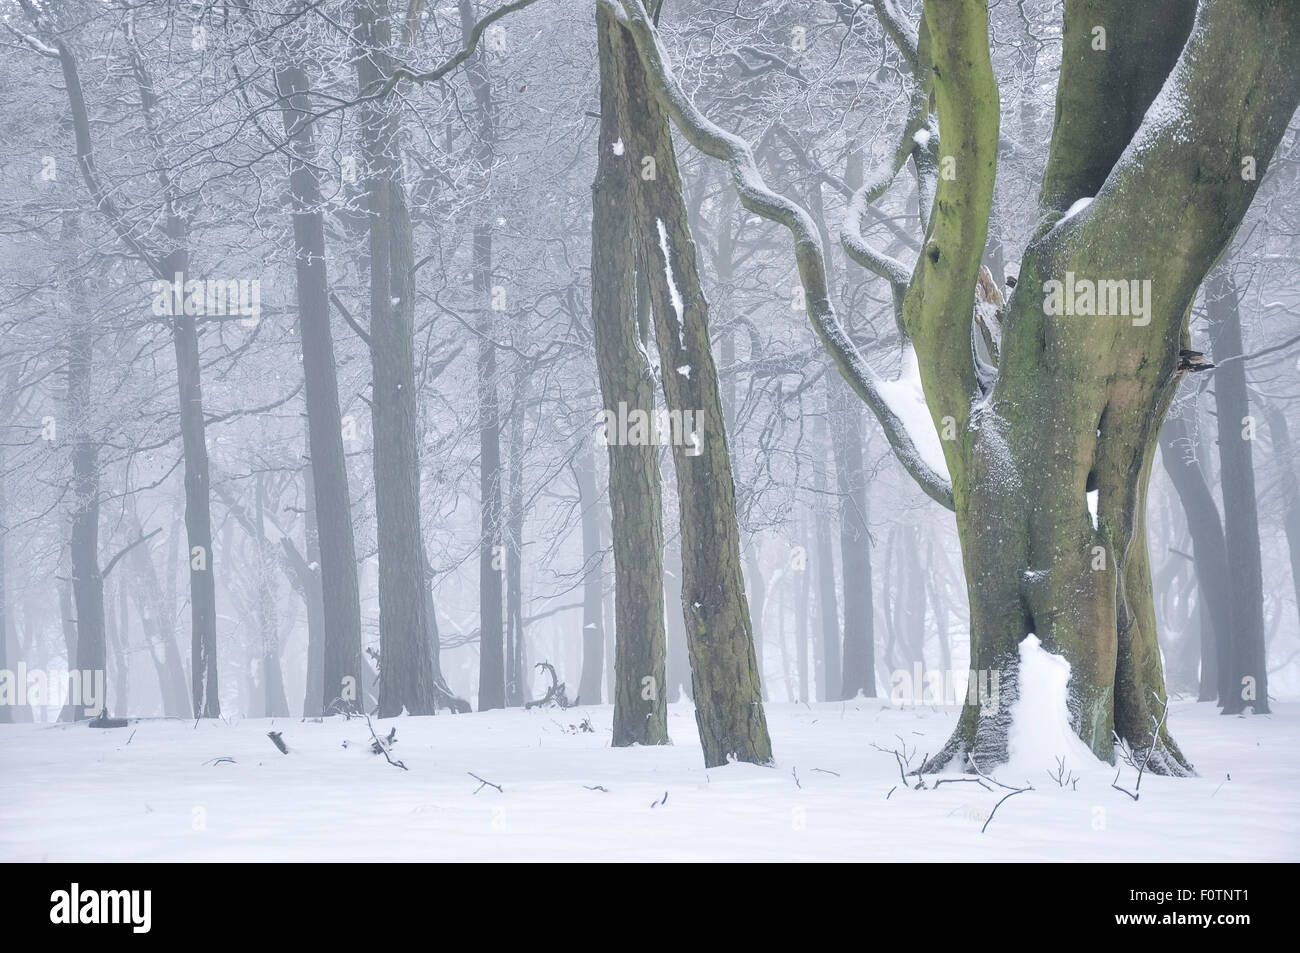 Magico bosco inglese in inverno con alberi rientranti nella gelida nebbia. Foto Stock